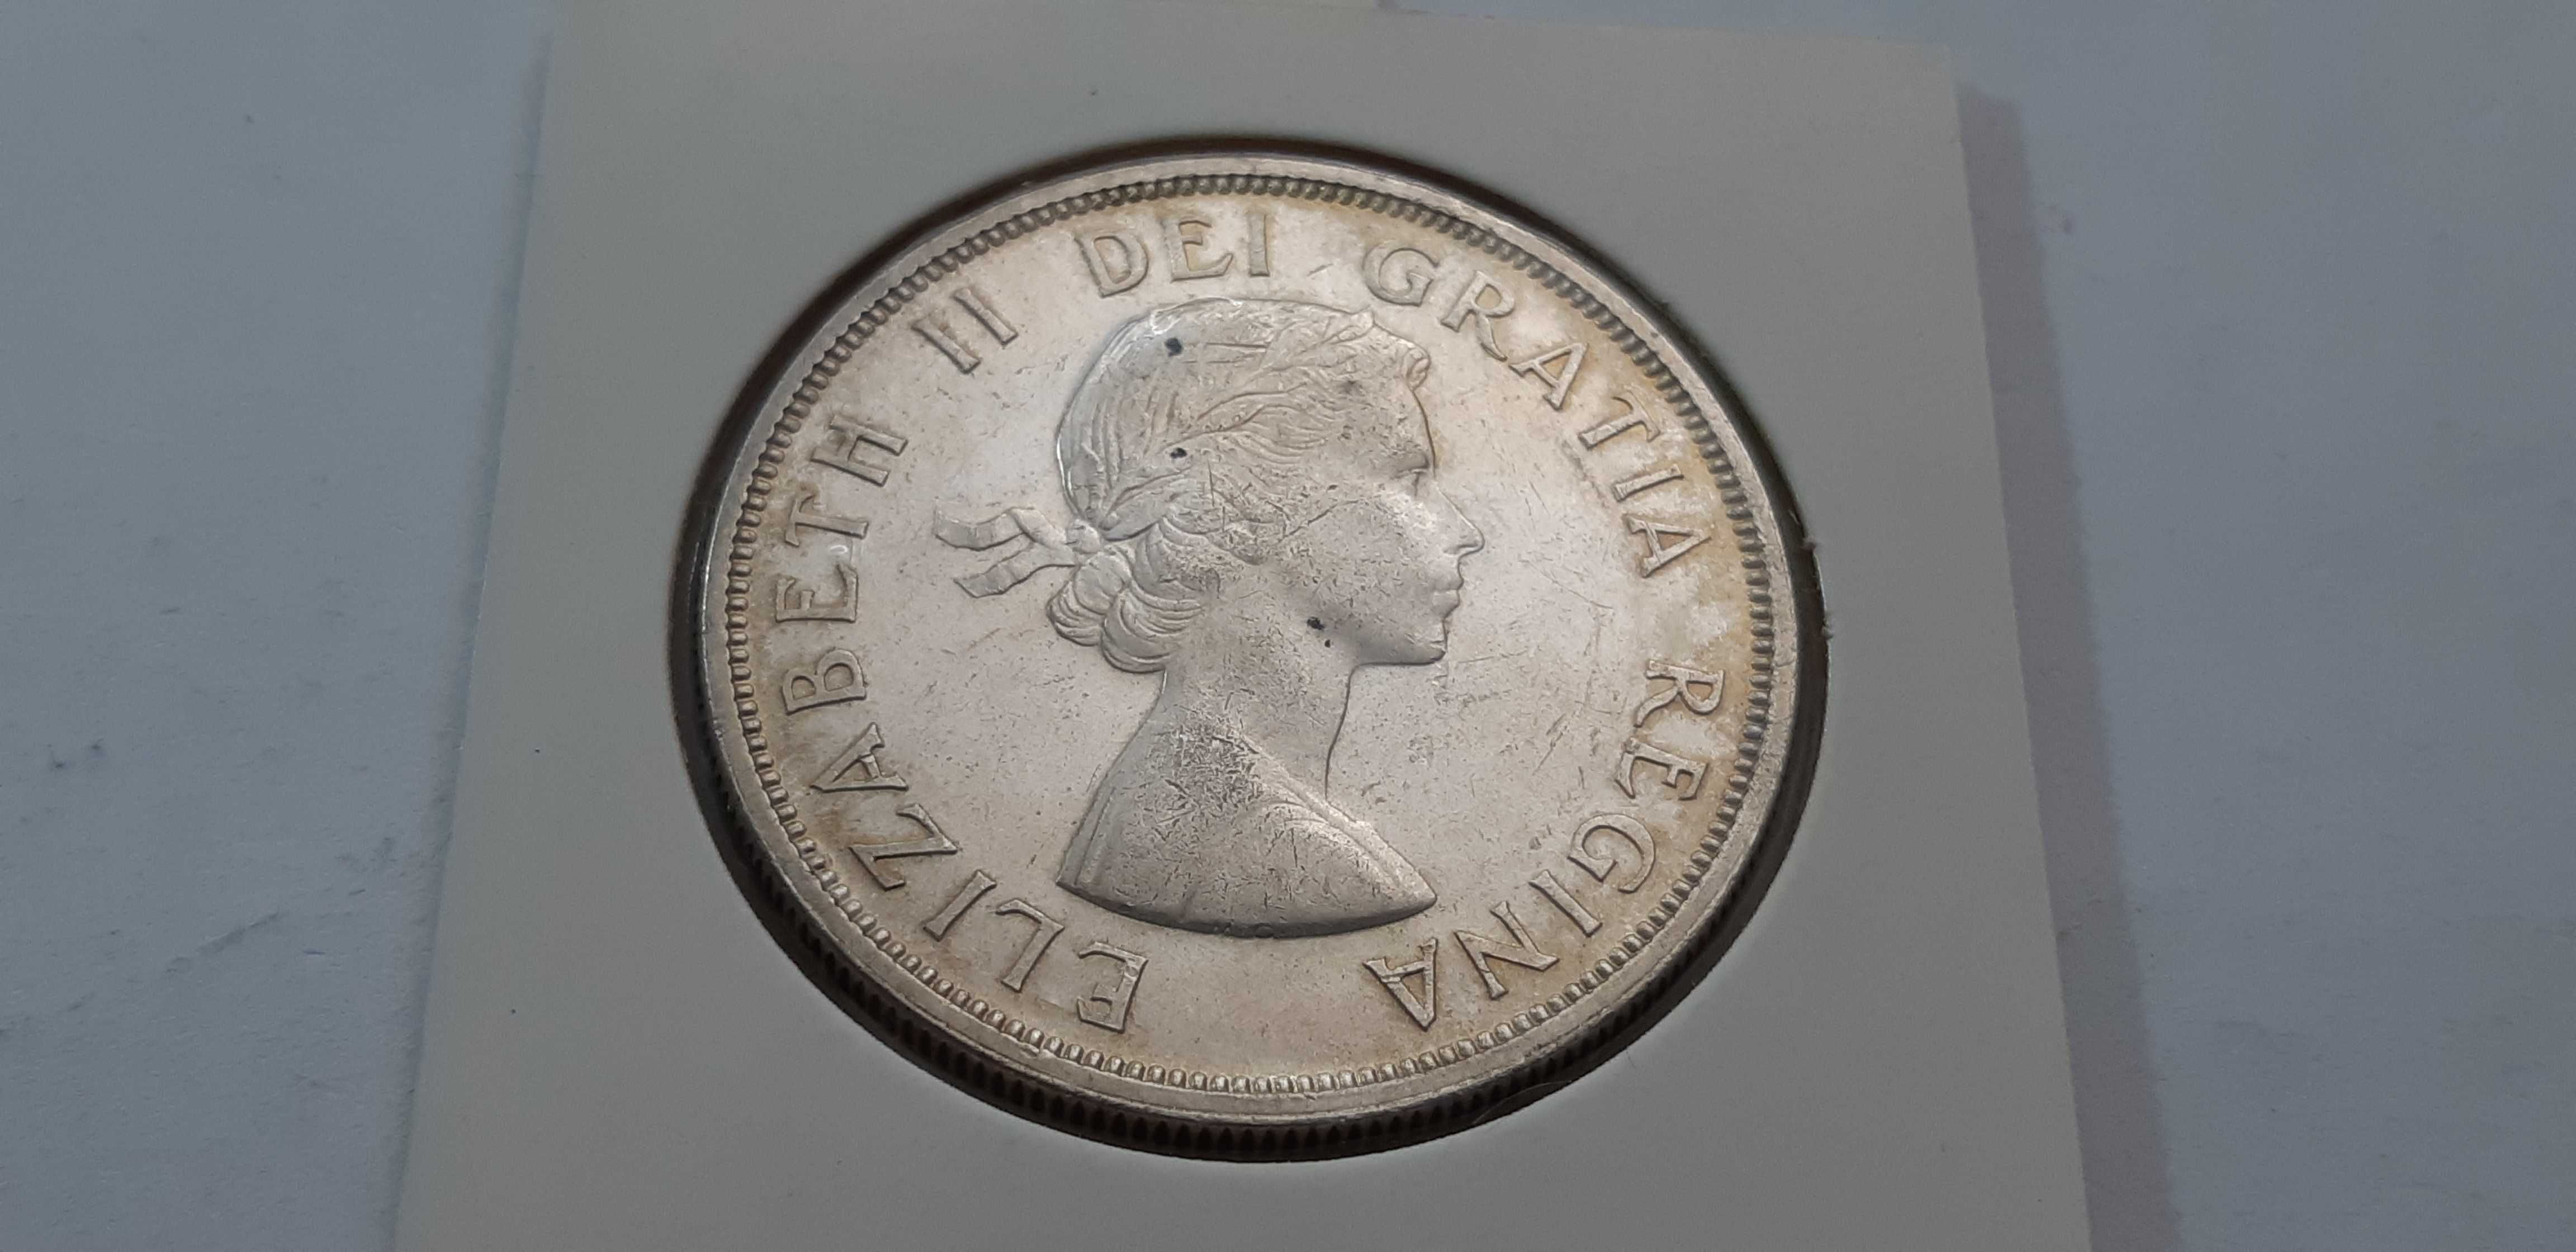 Kanada 1 dolar 1962 - srebro - real foto - stan znakomity